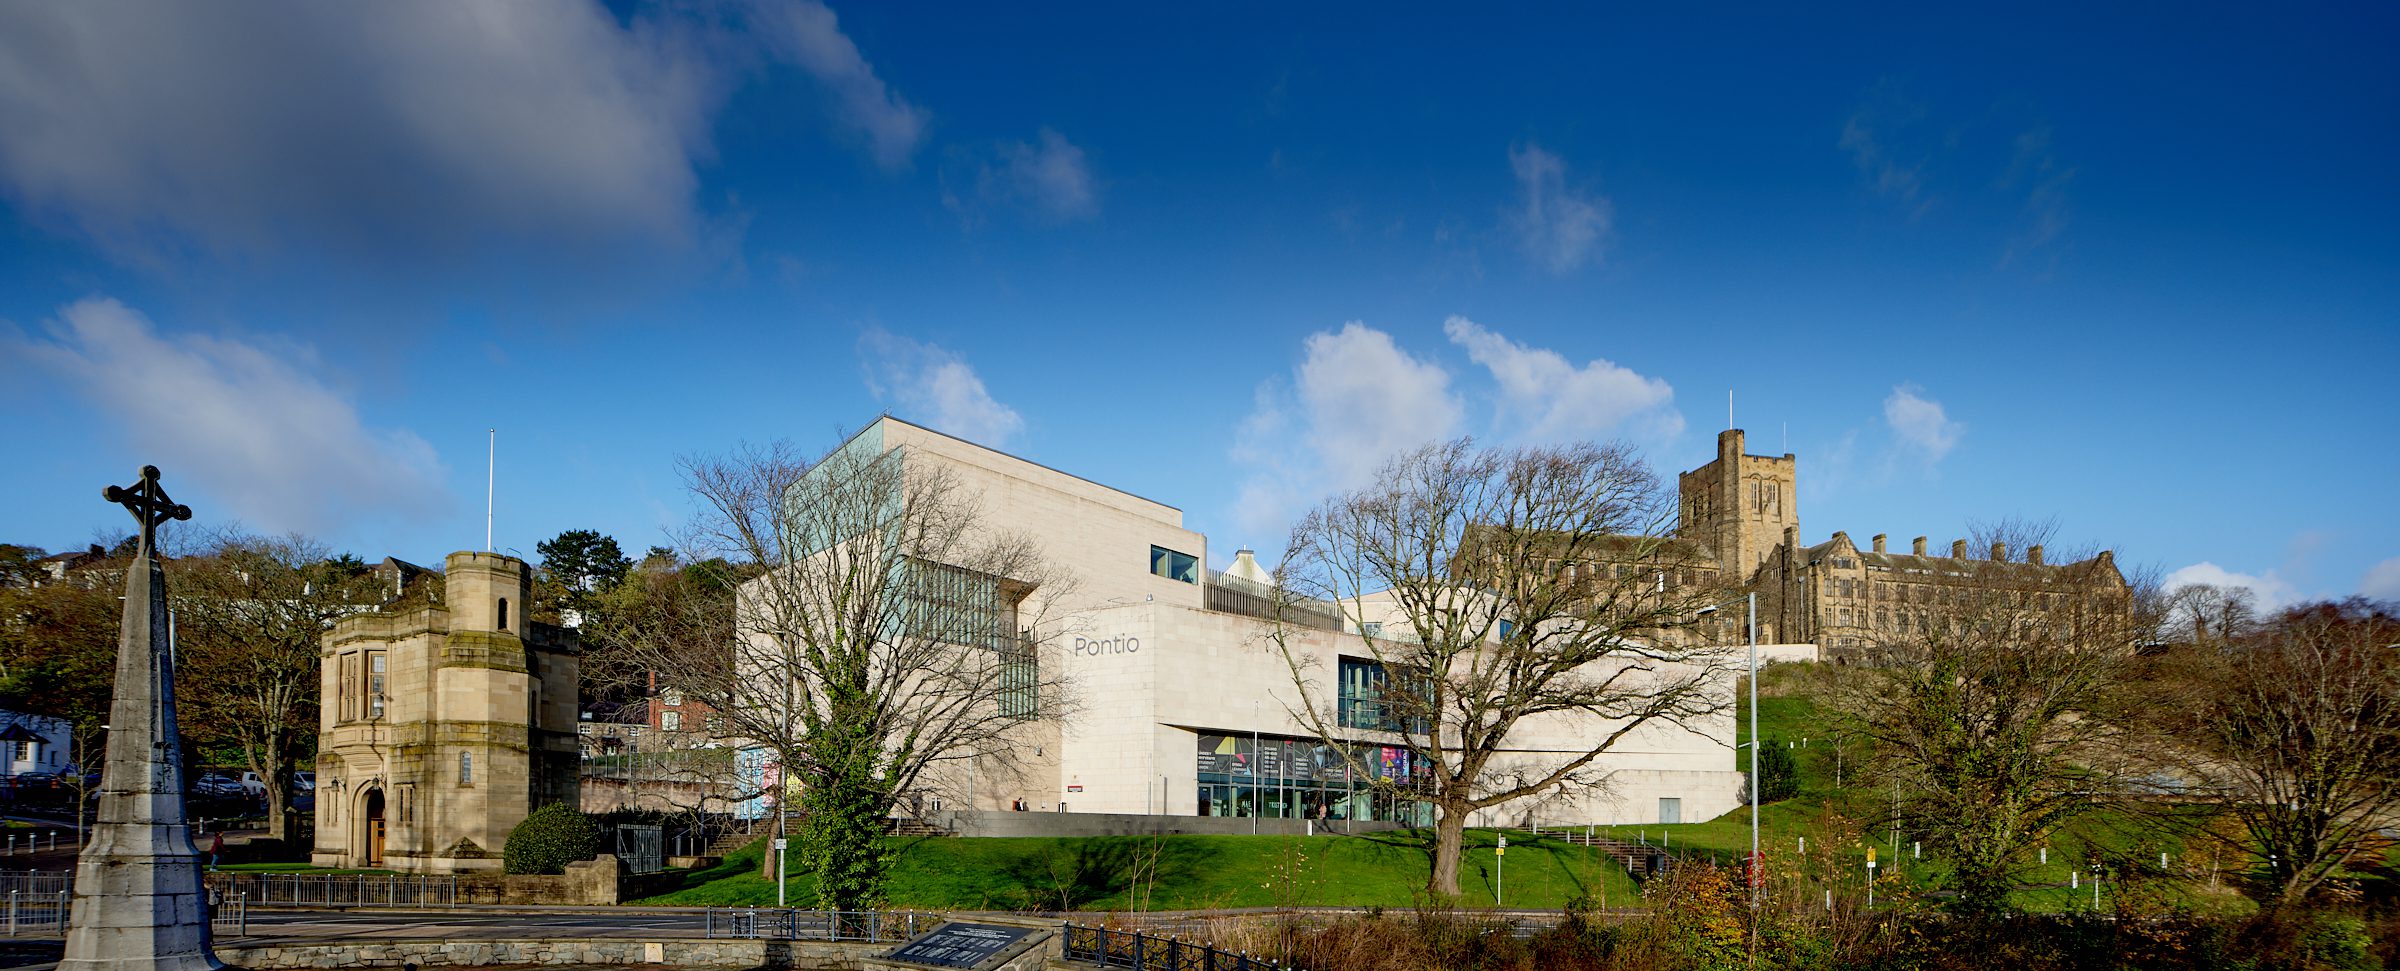 Bild der Universität Bangor mit Wolken